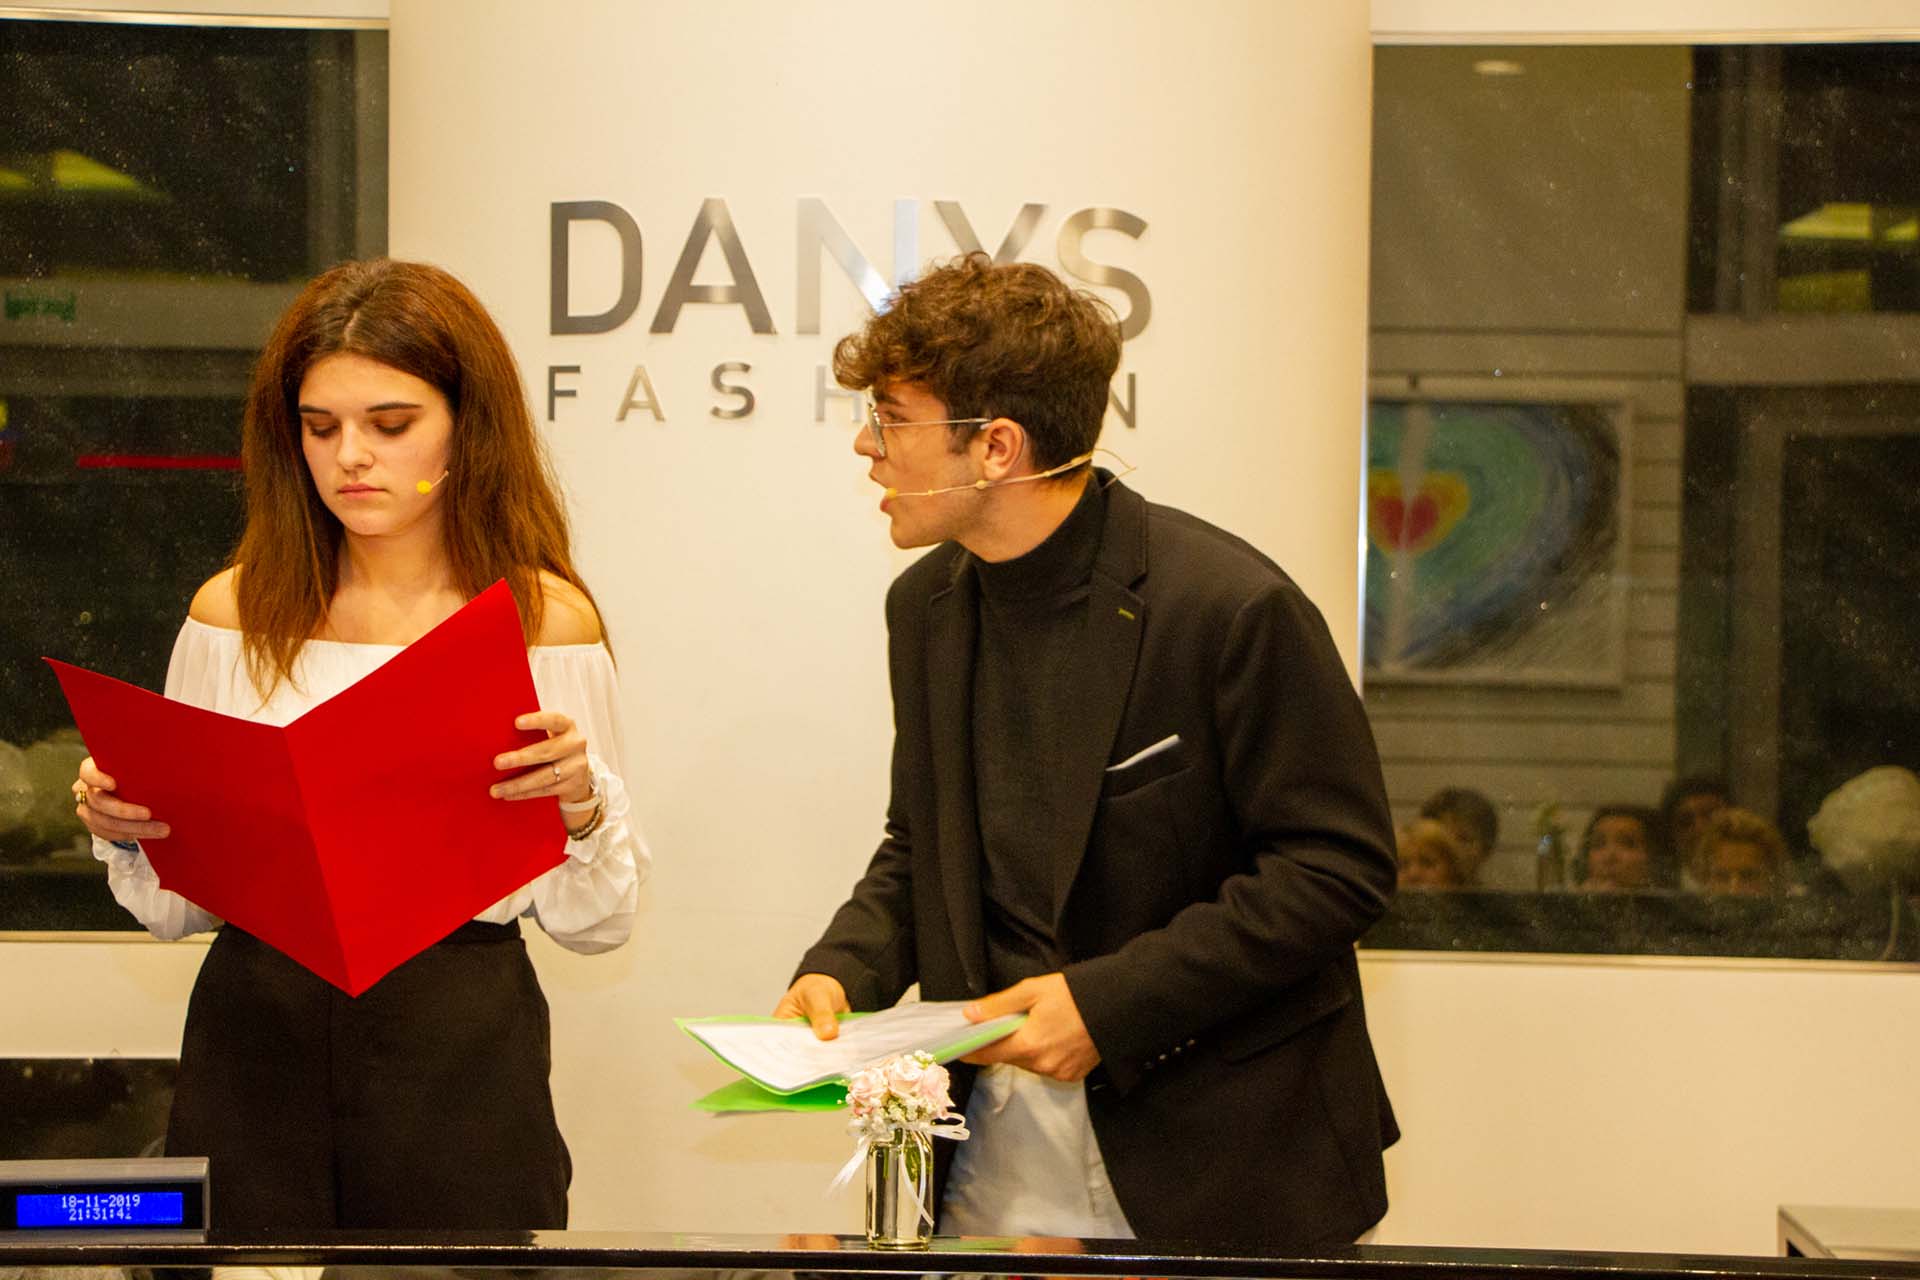 29 - attori- Evento Fuori la voce | Danys Fashion Carpi